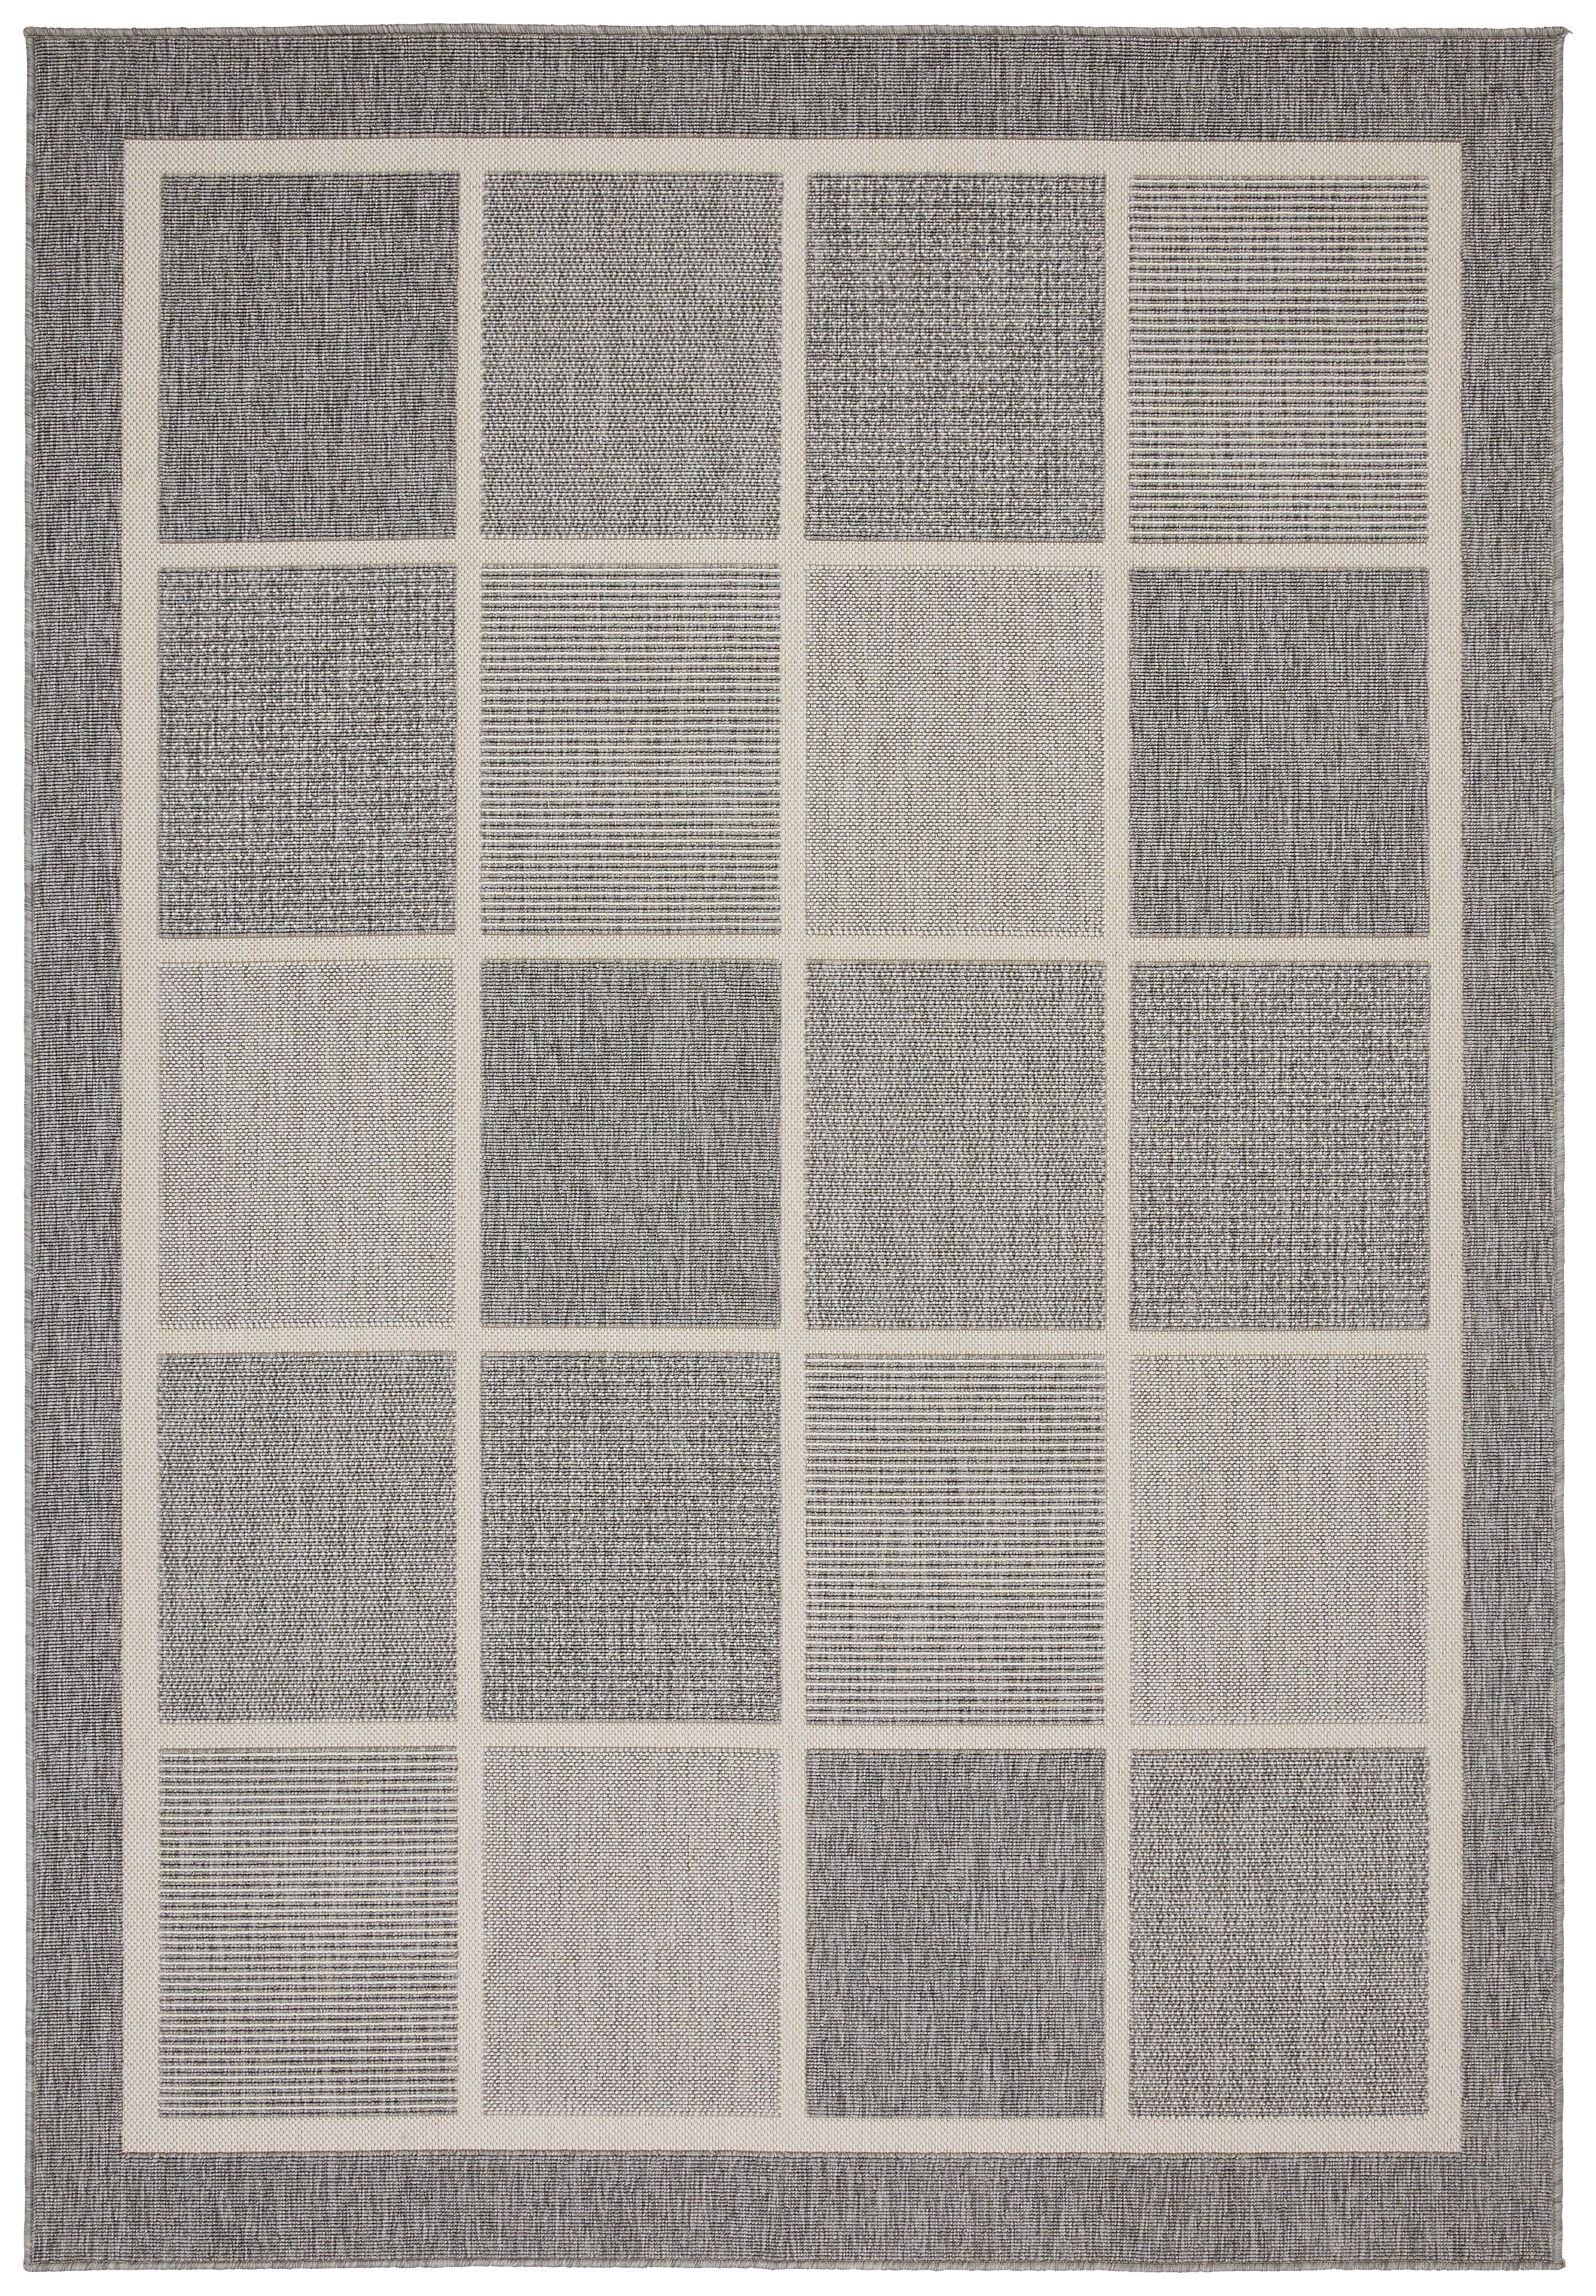 Koberec Tkaný Na Plocho Minnesota 3, 160/230cm, Šedá - šedá, Moderní, textil (160/230cm) - Modern Living